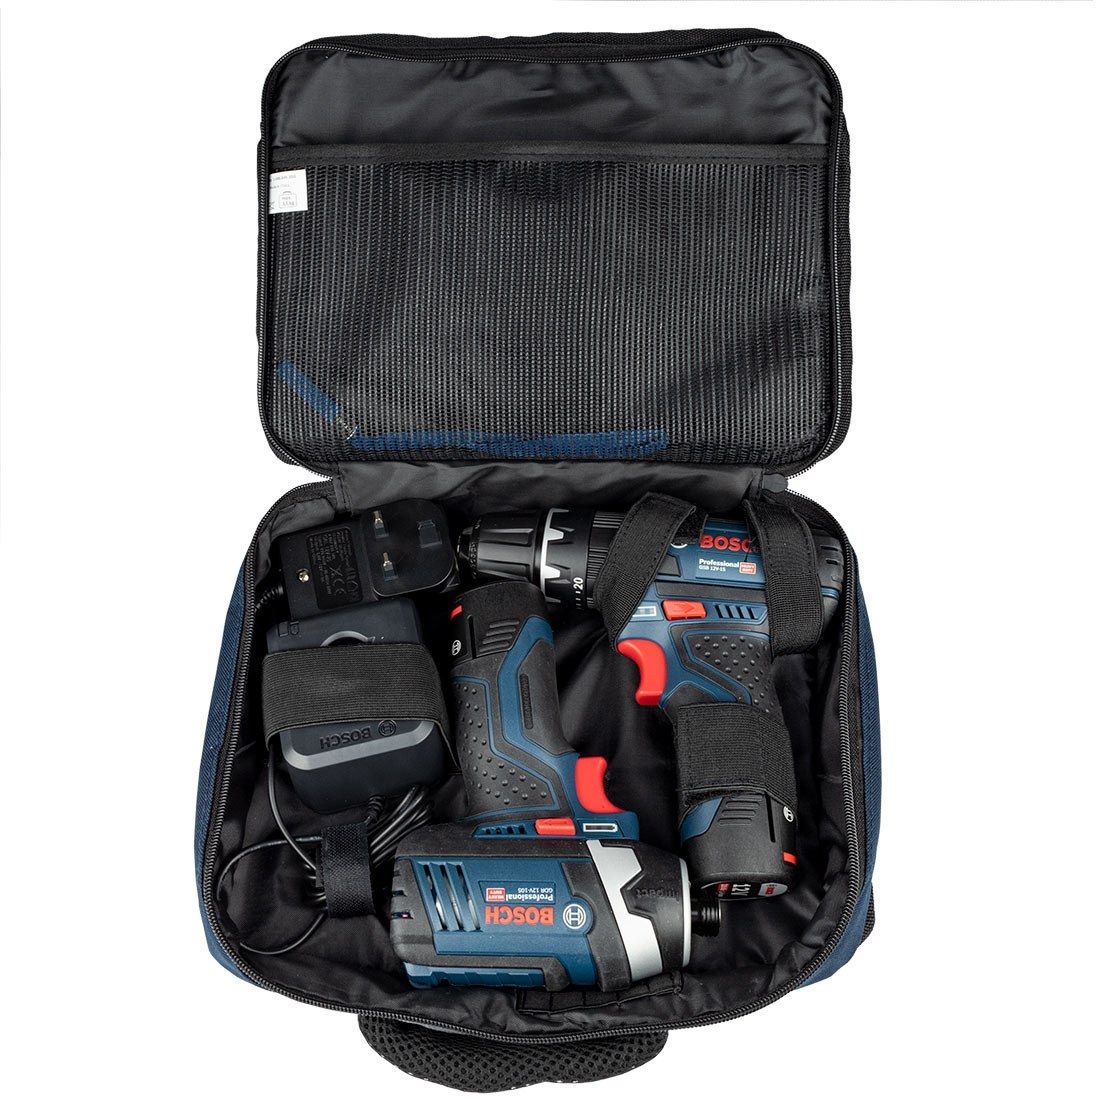 Bosch Professional Soft Blue Tool Bag 1600A003BG